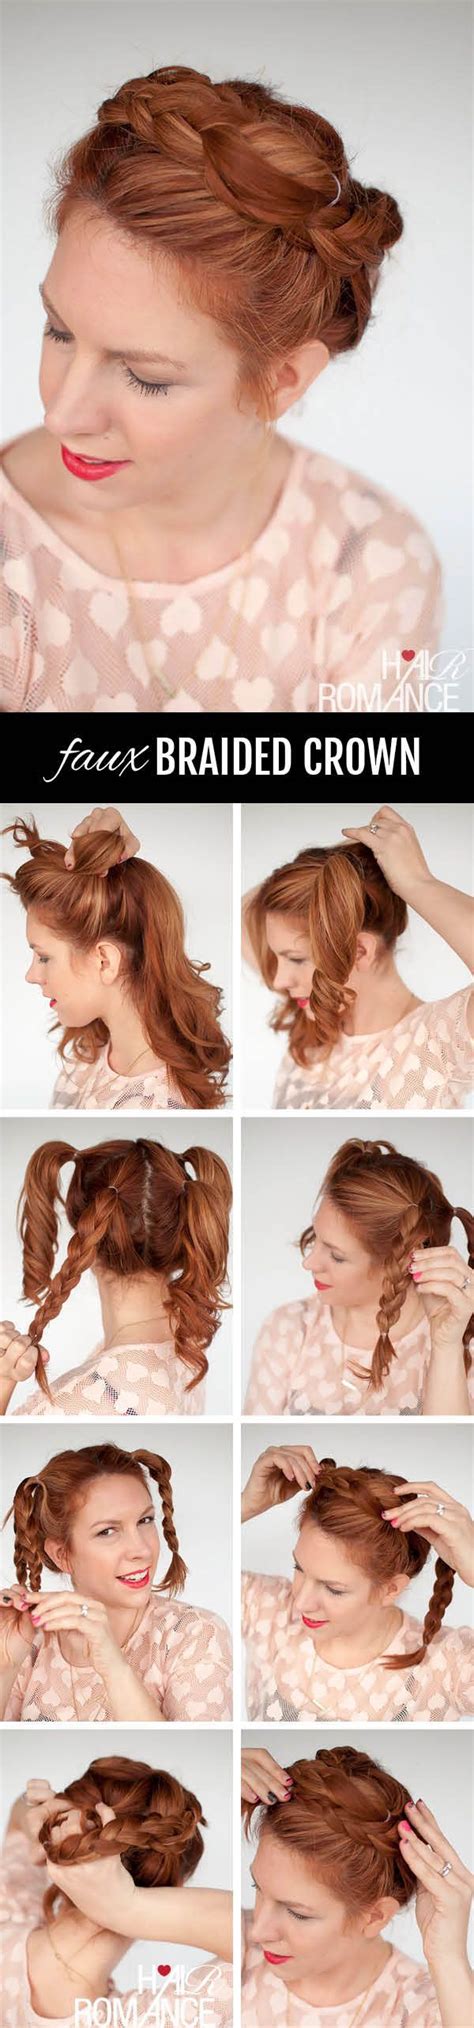 Hair • hairstyles • rope braids. Braid cheat - faux braided crown hairstyle tutorial ...